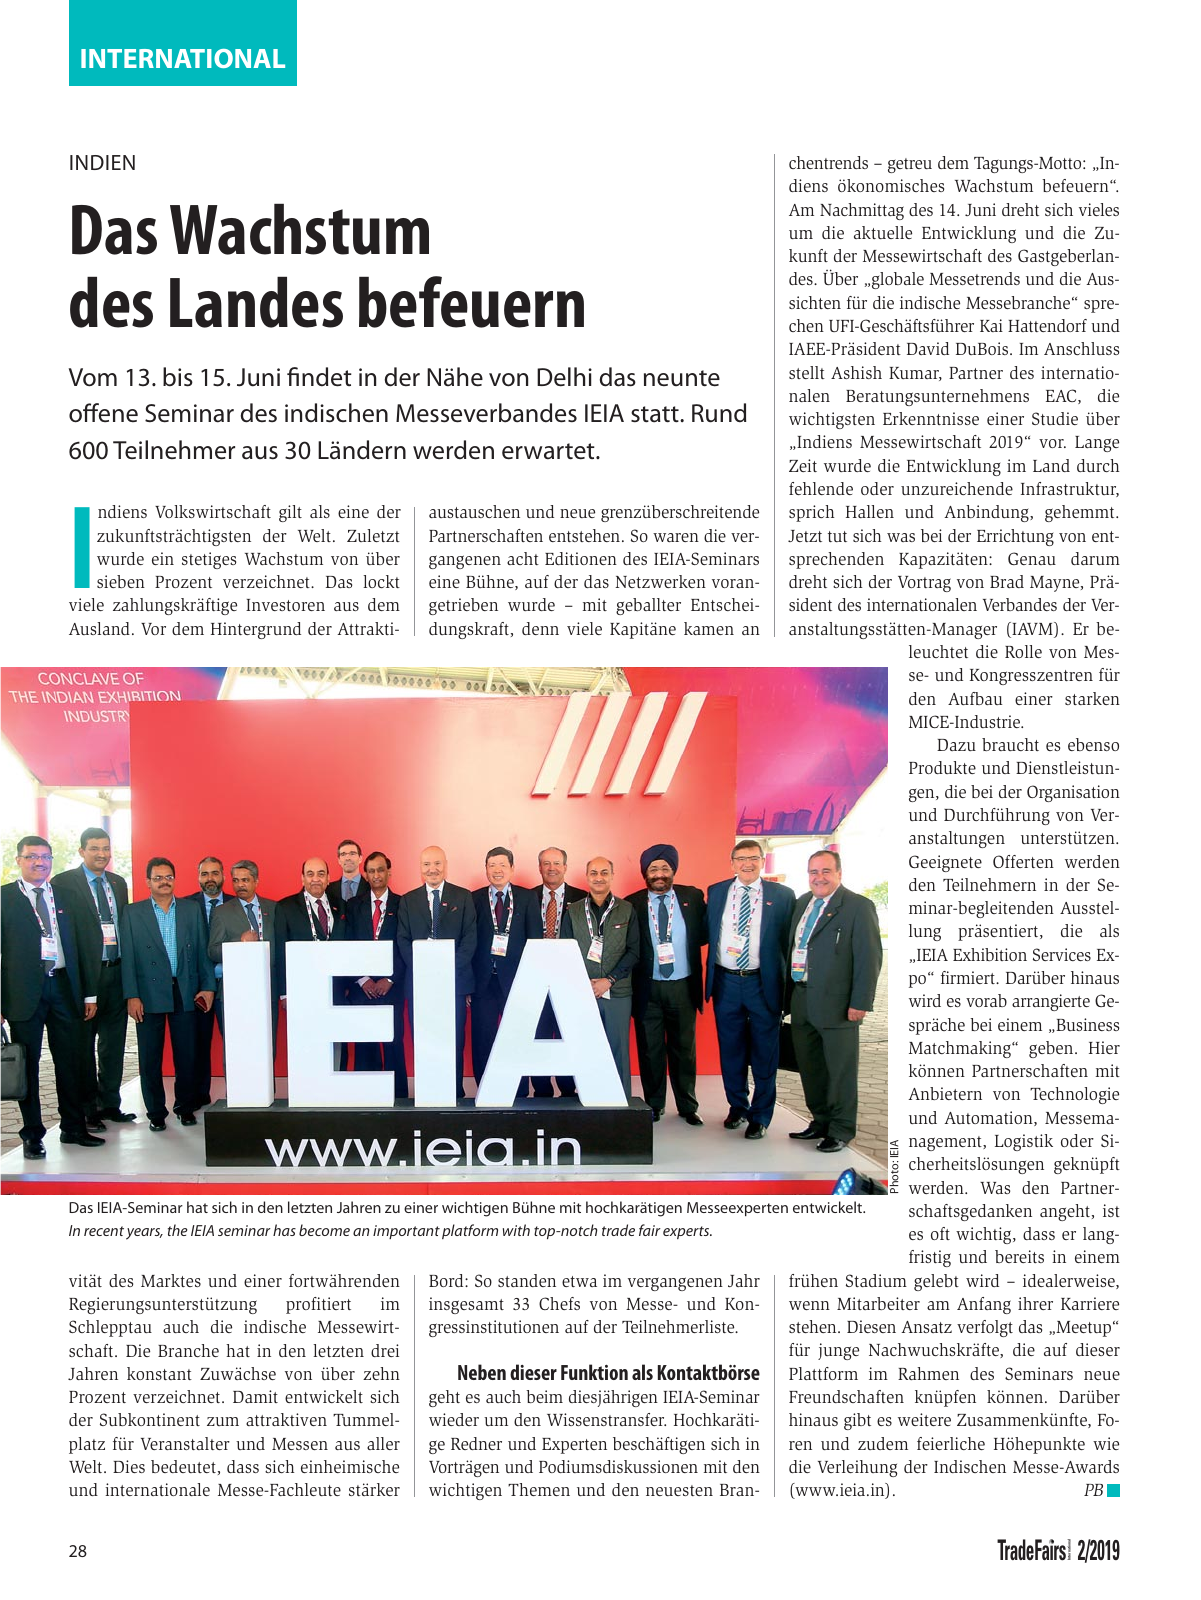 Vorschau TFI Trade-Fairs-International 02/2019 Seite 28